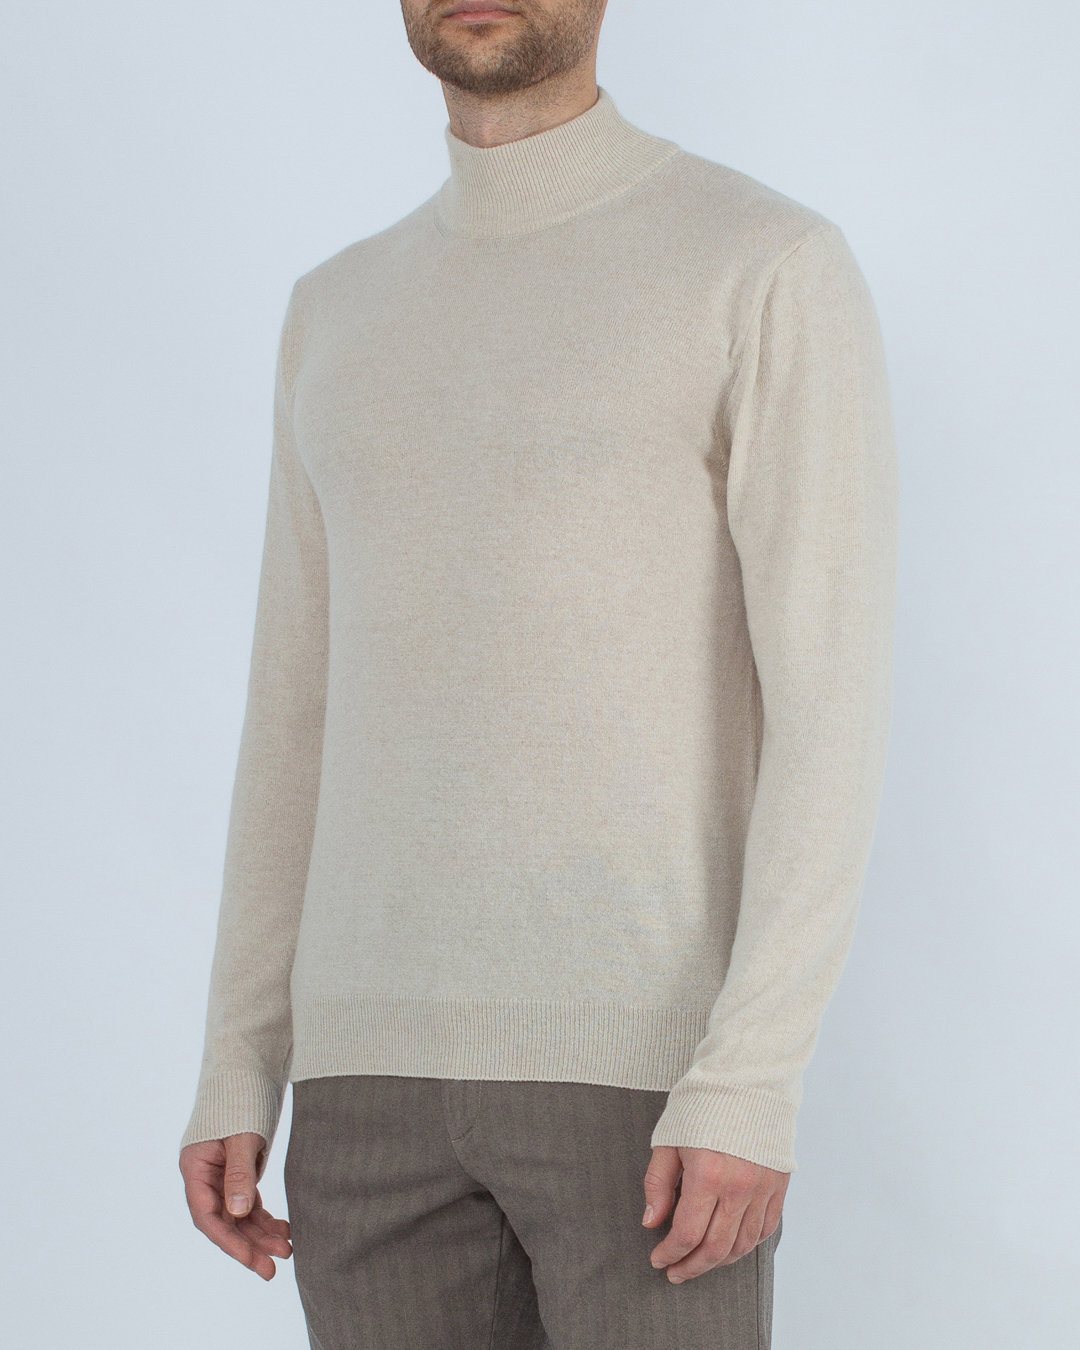 свитер CRUNA ASPEN.847 молочный l, размер l - фото 3